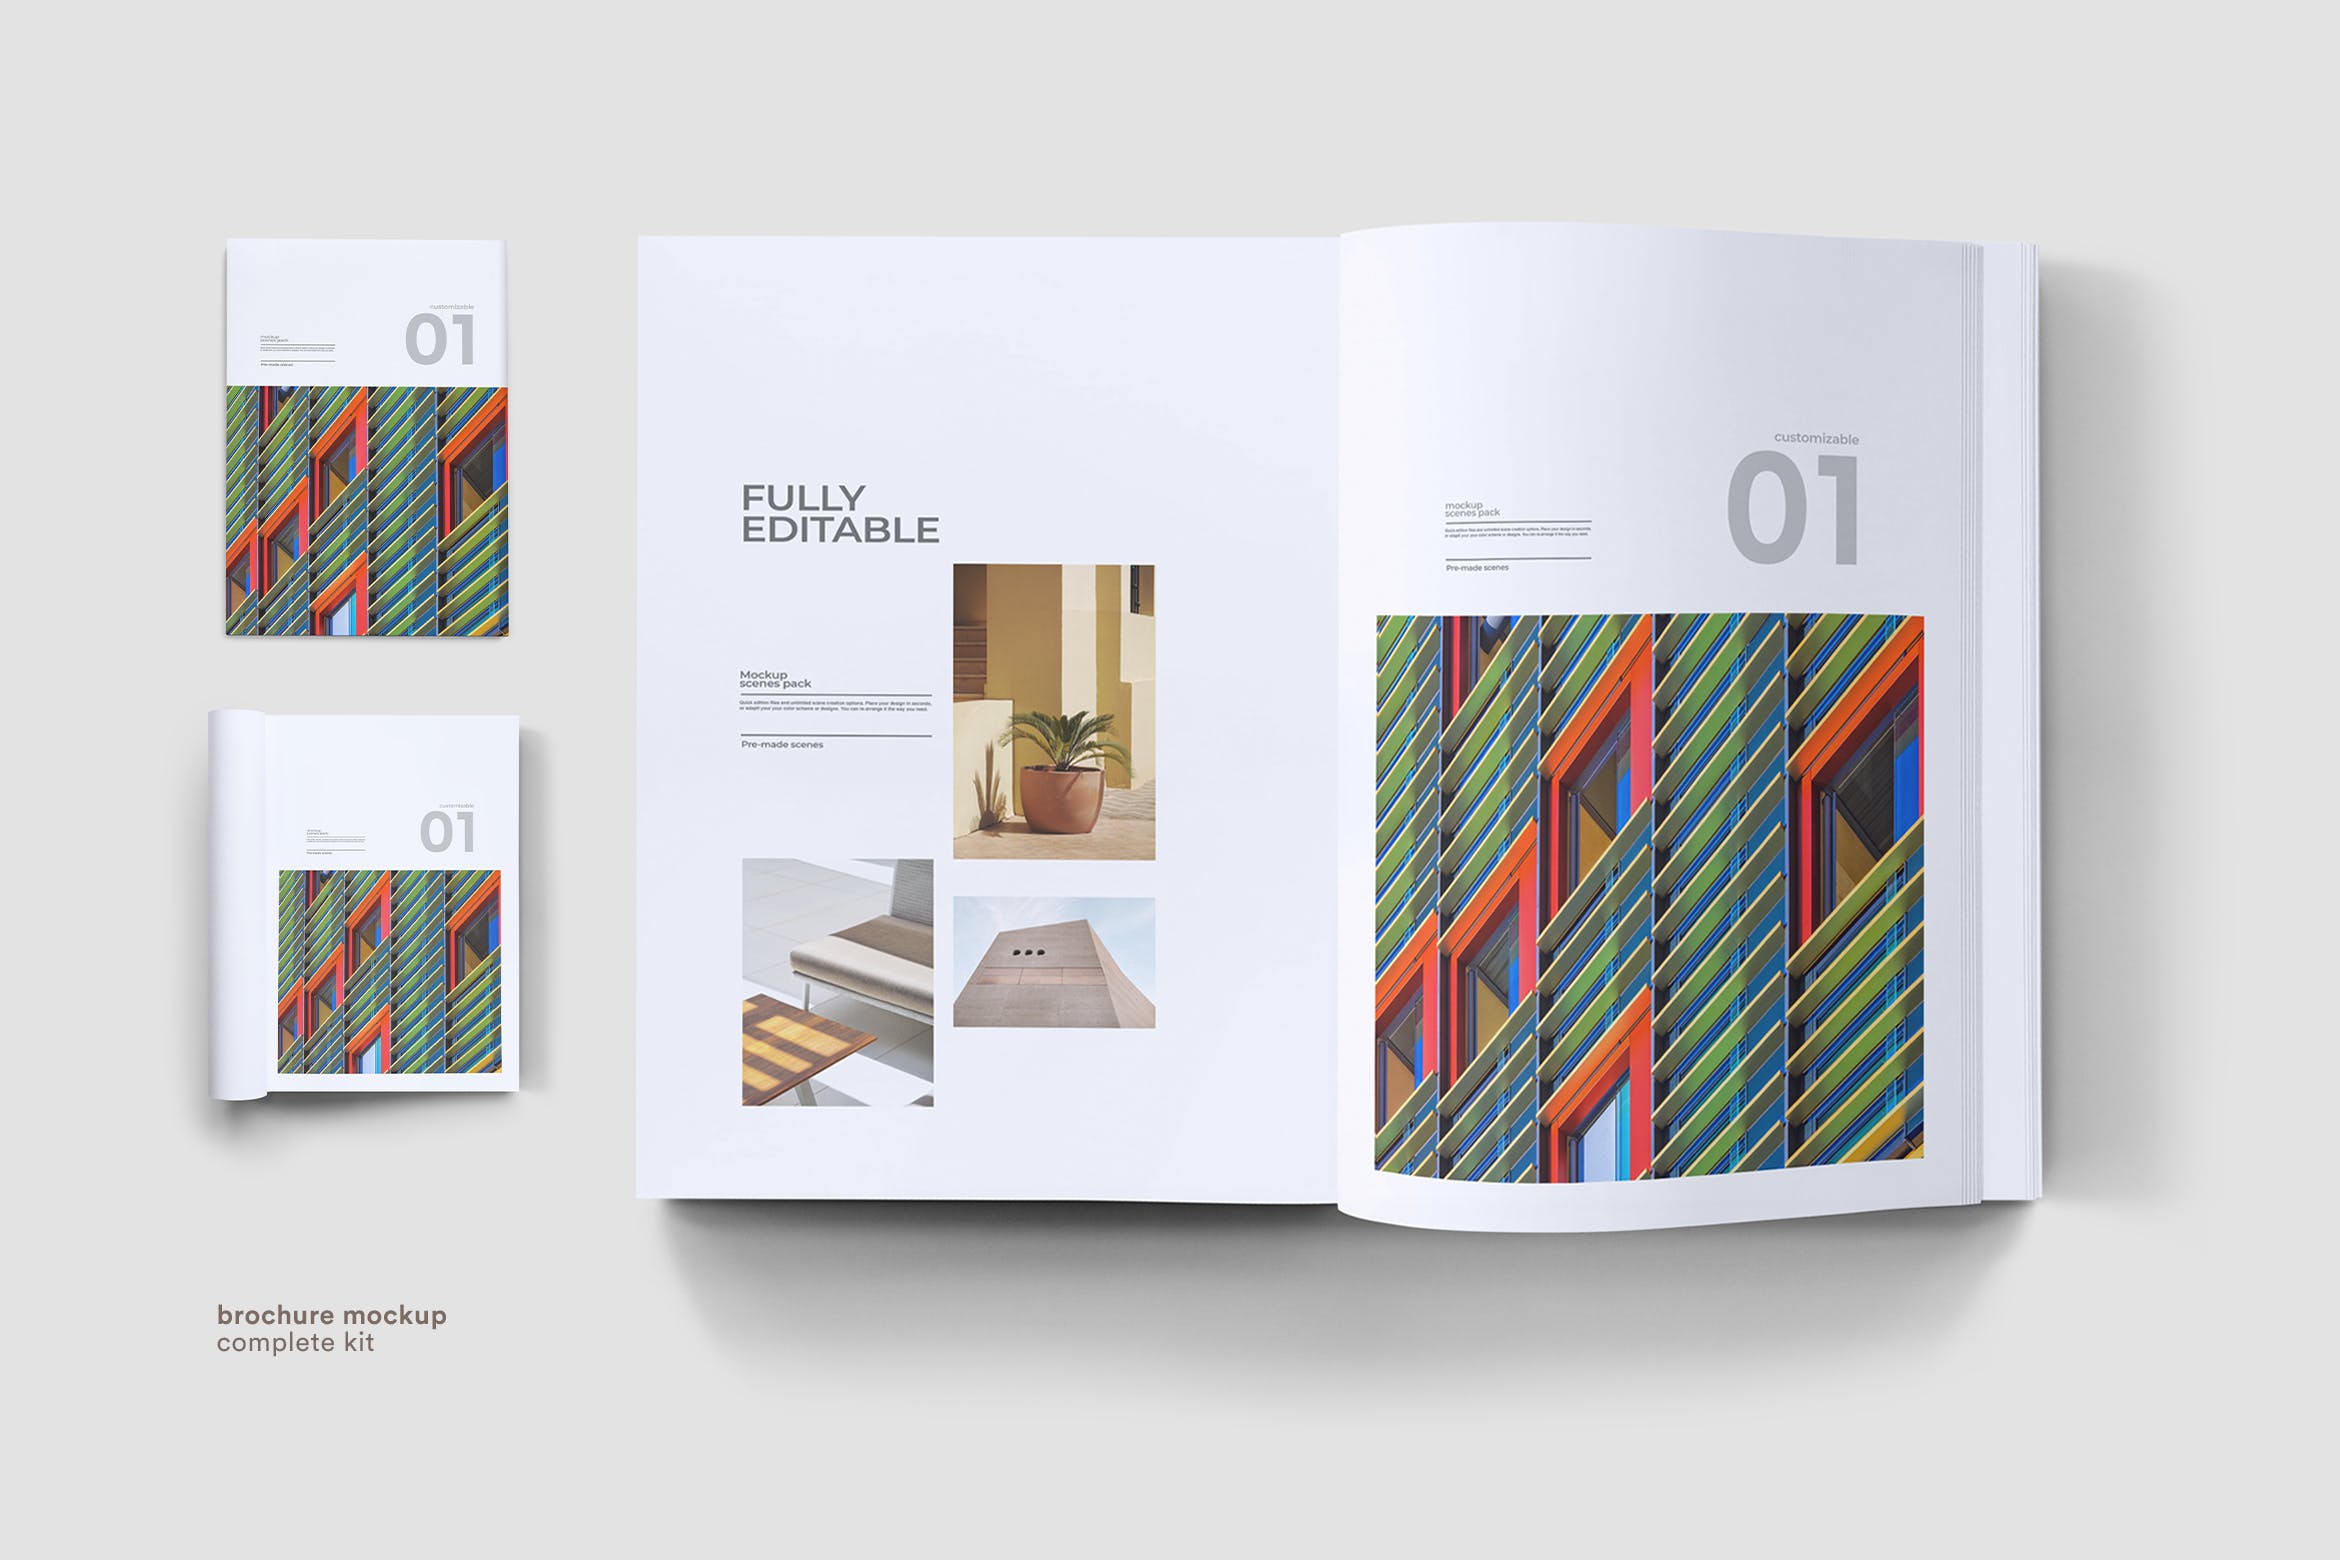 企业画册封面&版式设计效果图样机第一素材精选 Brochure Mock Up插图